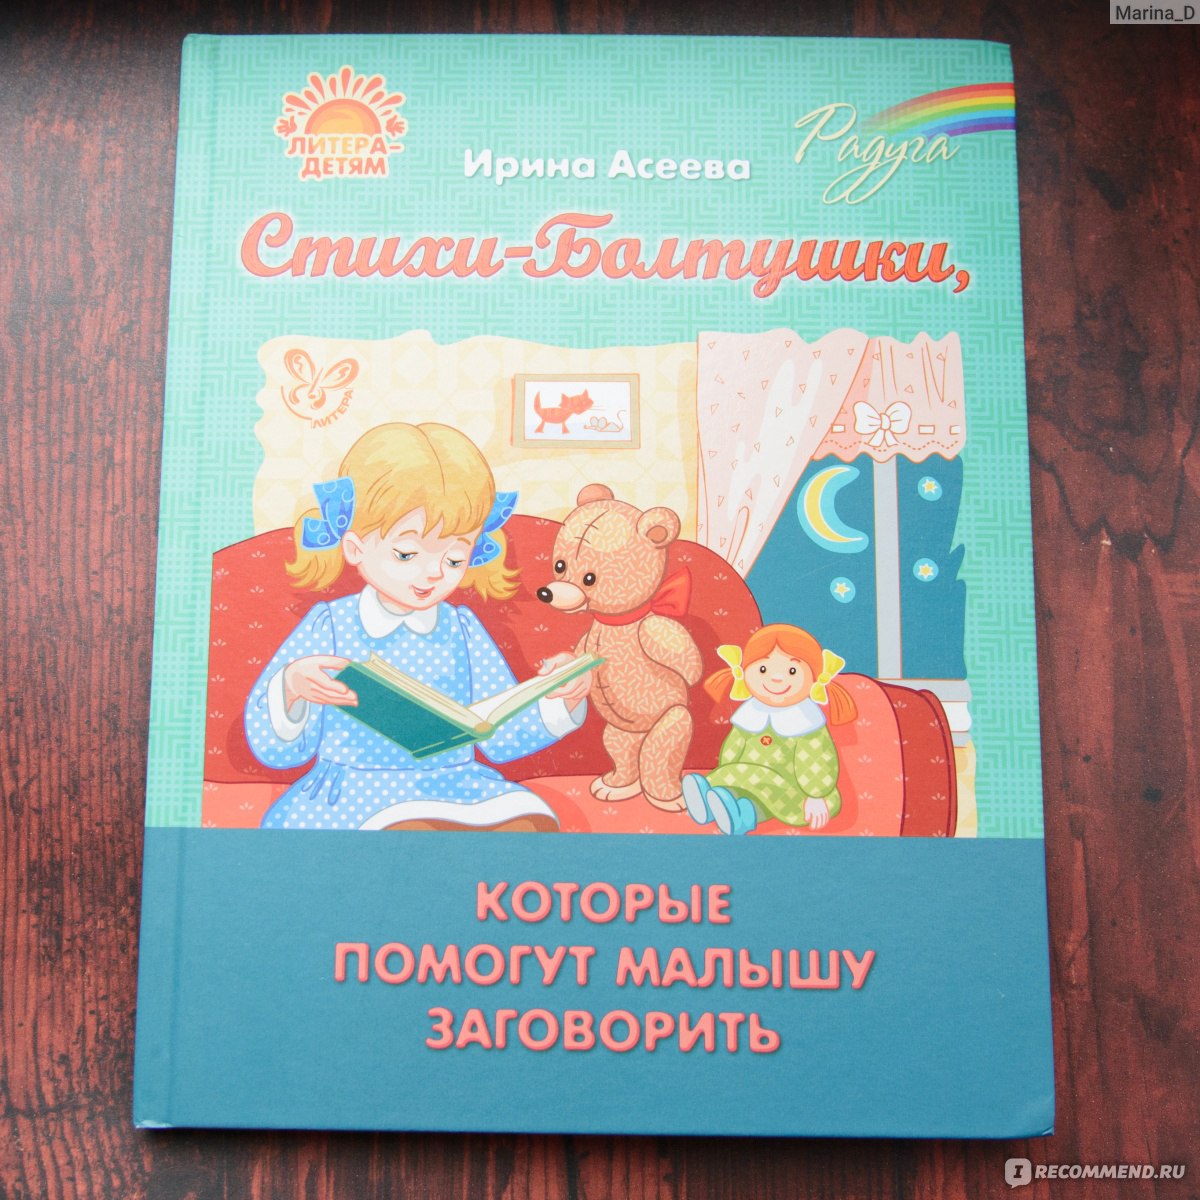 Михалков стихи для детей дошкольного возраста